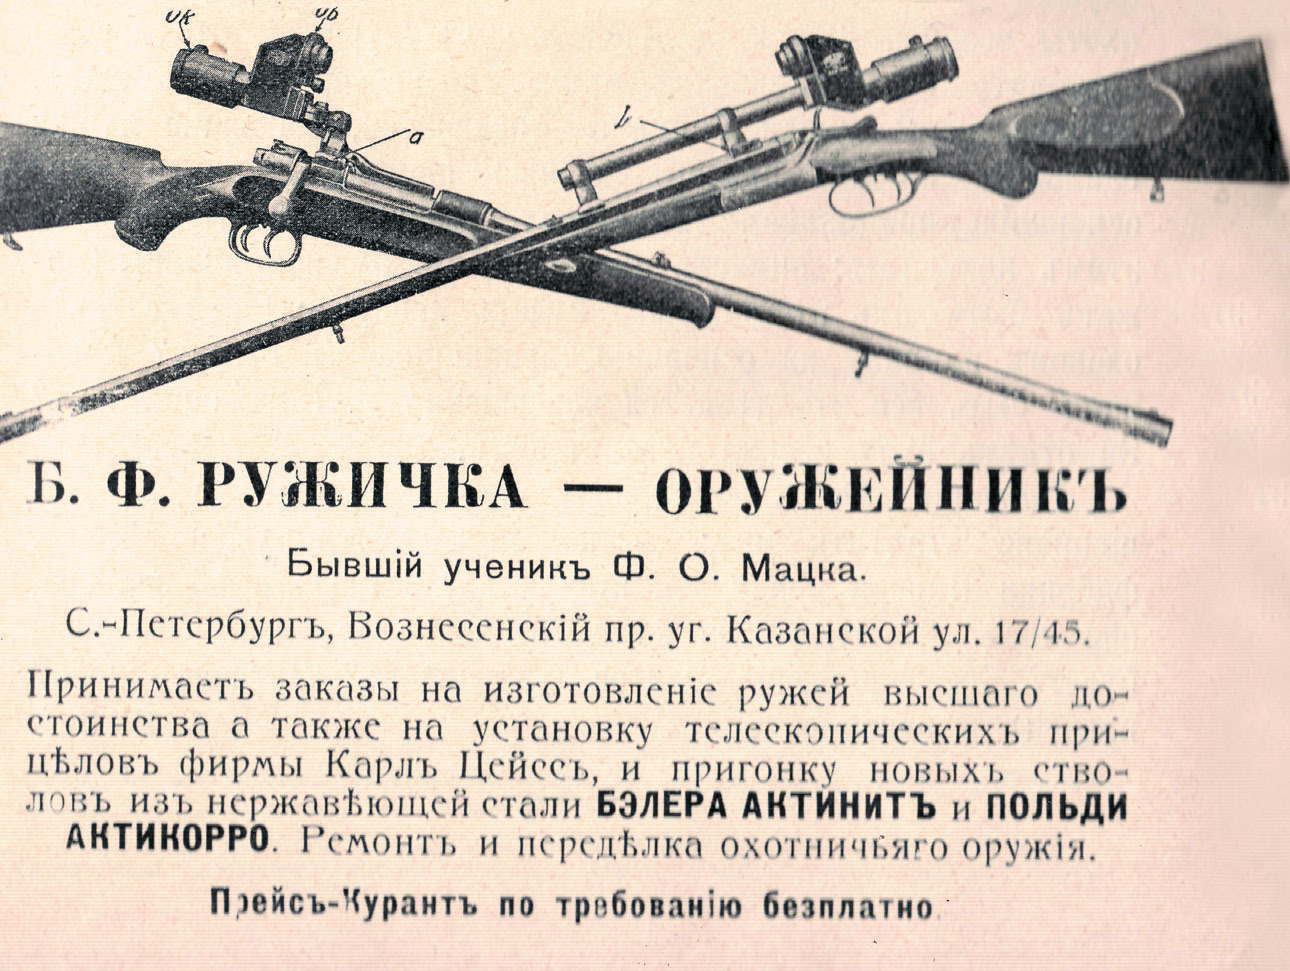 Изображение Объявление Б.Ф. Ружички 1912 г. Журнал «Наша охота». Фото автора. 